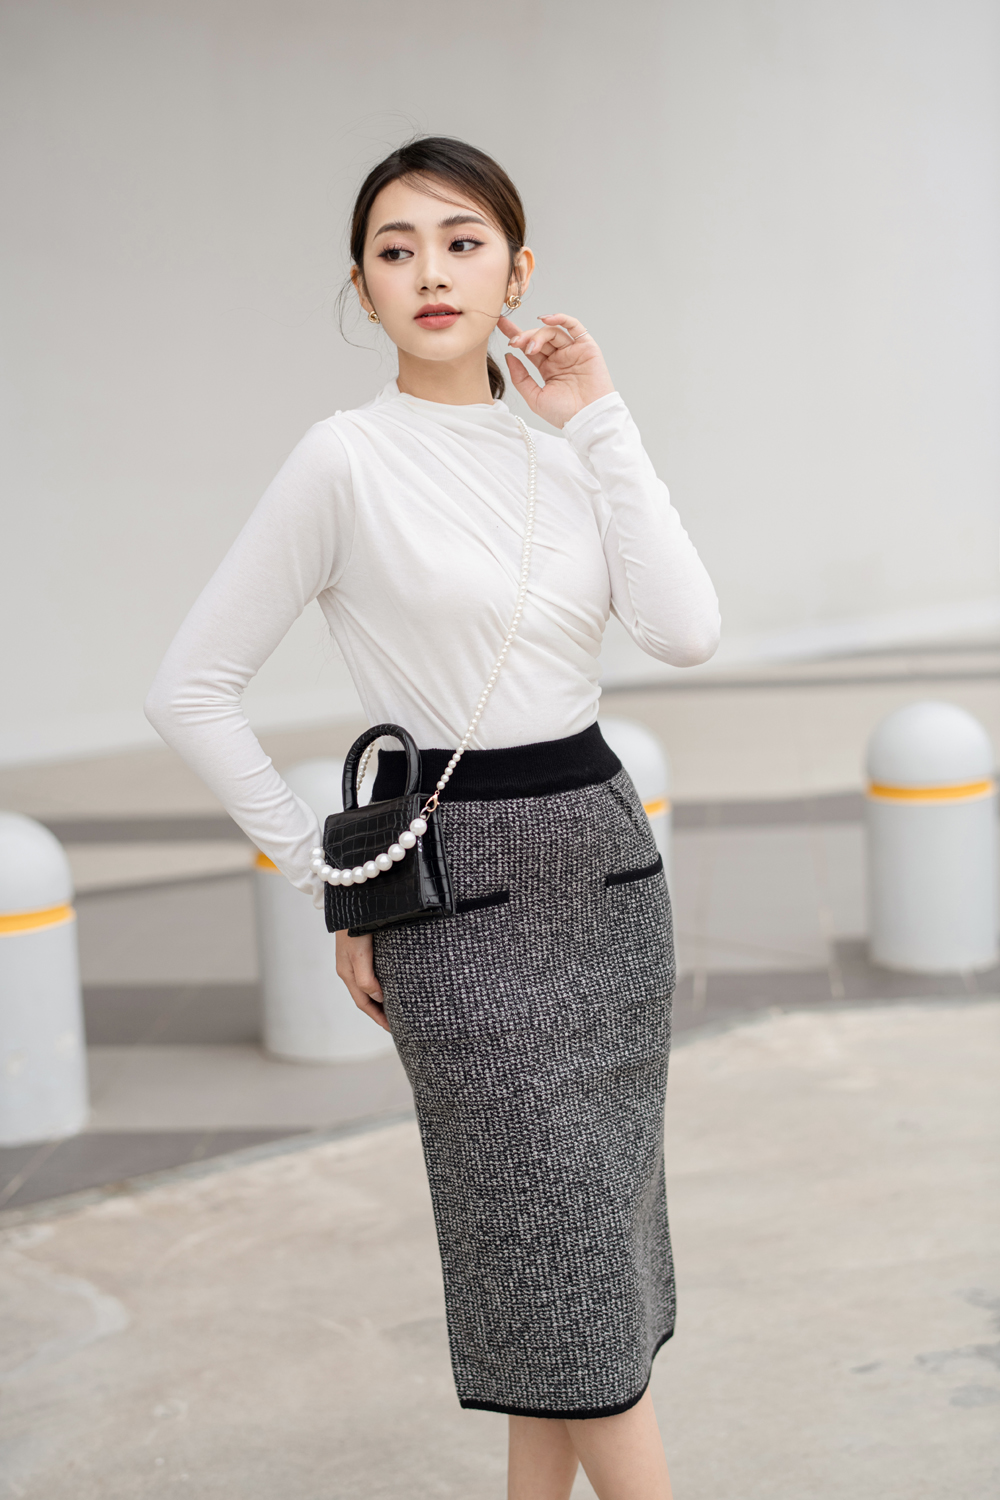 Chân váy bút chì màu trắng CV03-18 | Thời trang công sở K&K Fashion